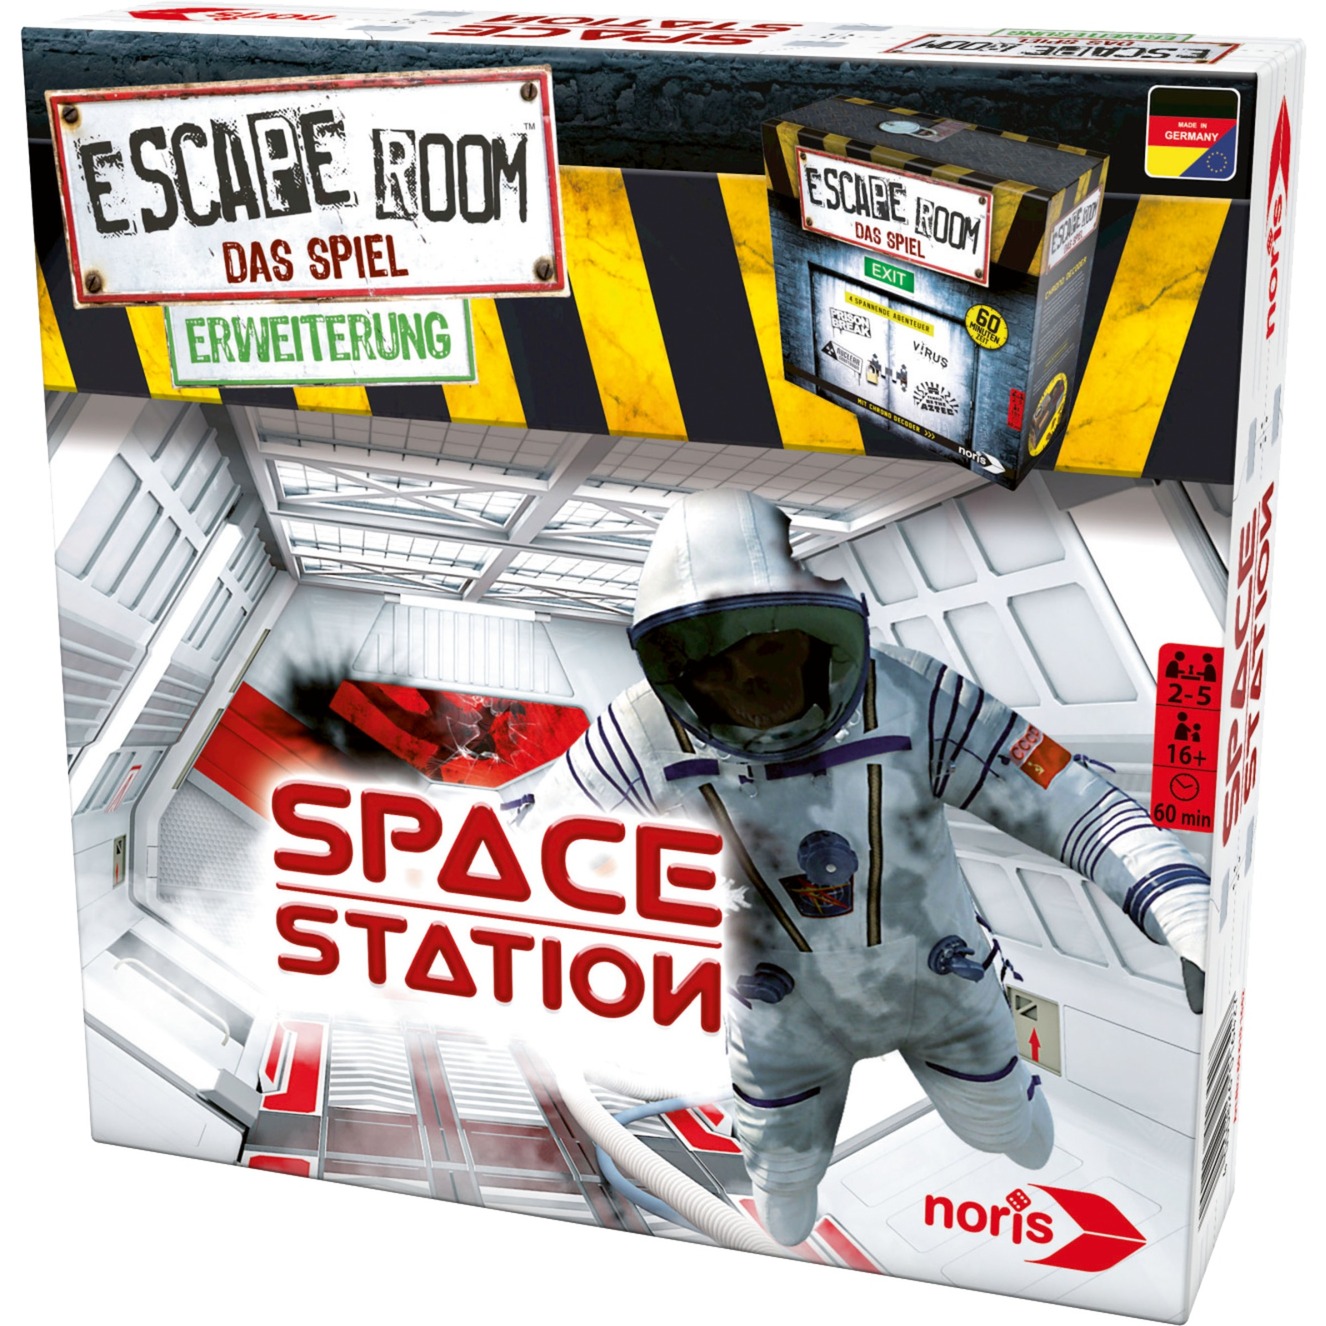 Escape Room Space Station Podróżna/przygodowa Dla dzieci i Dorosłych, Gra towarzyska